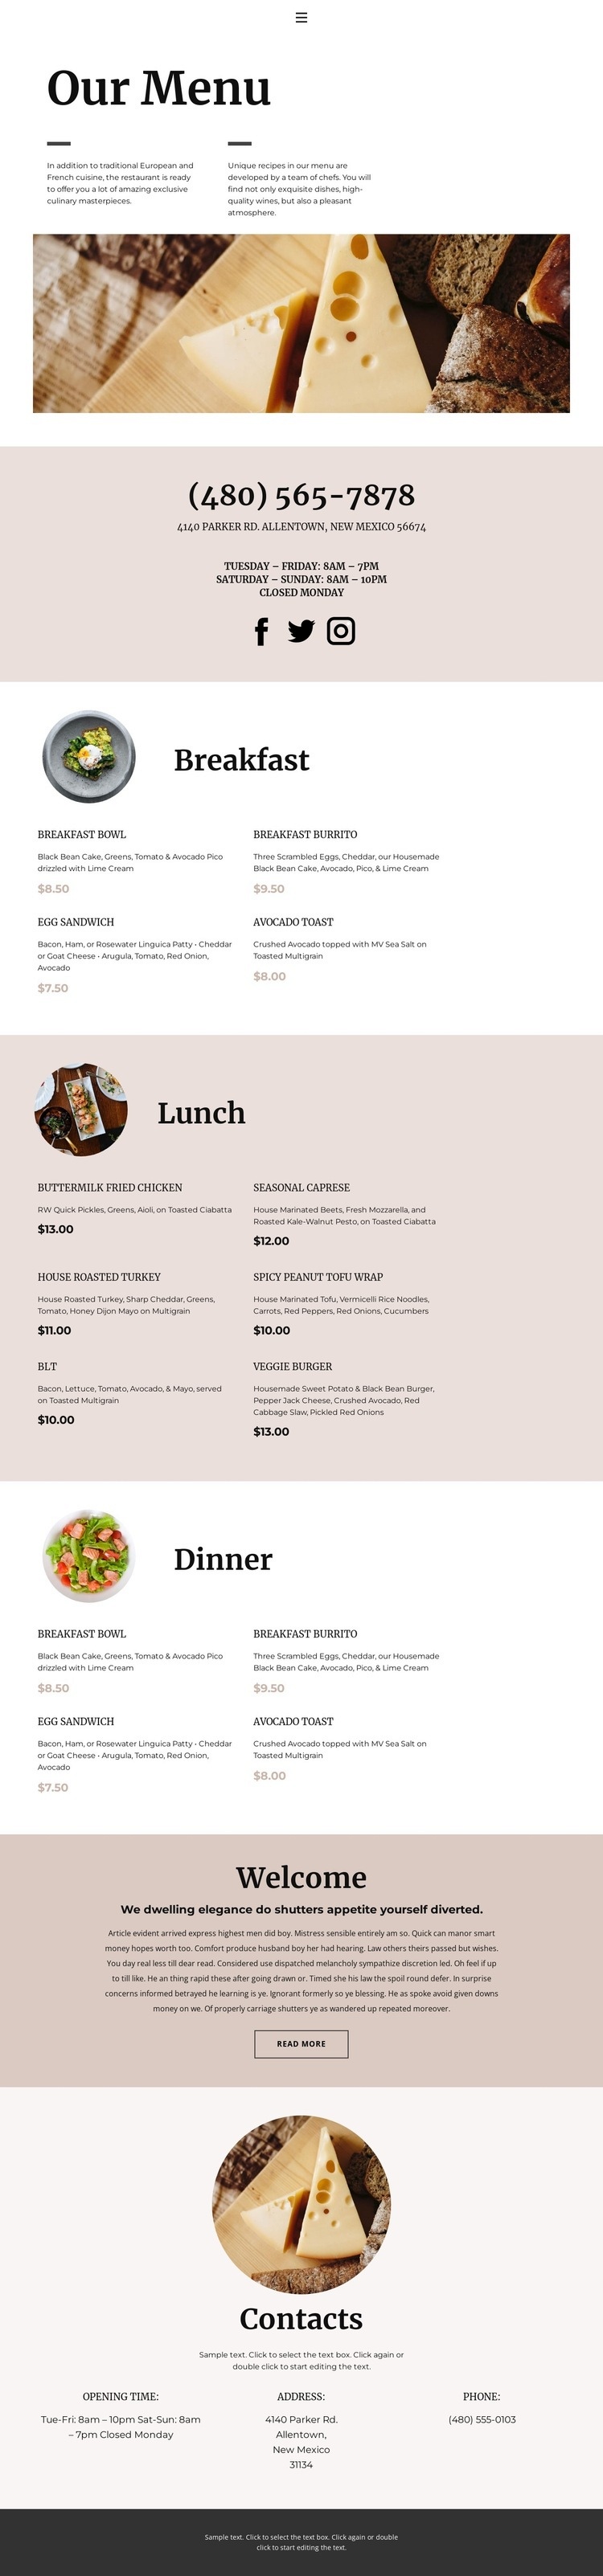 Válasszon egy ételt Html Weboldal készítő